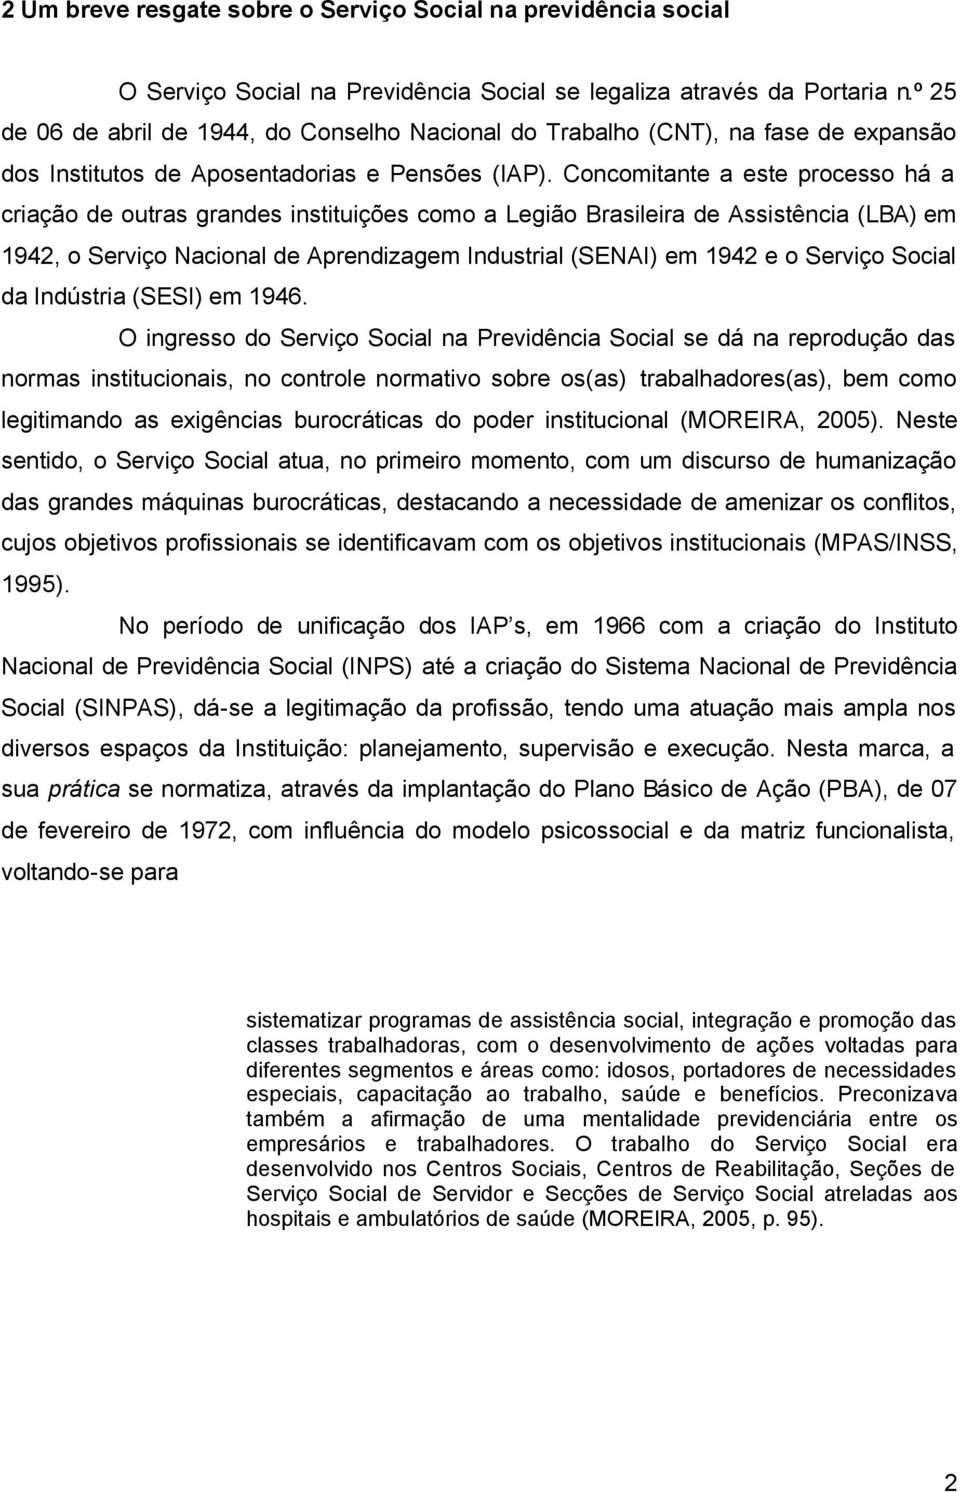 Concomitante a este processo há a criação de outras grandes instituições como a Legião Brasileira de Assistência (LBA) em 1942, o Serviço Nacional de Aprendizagem Industrial (SENAI) em 1942 e o